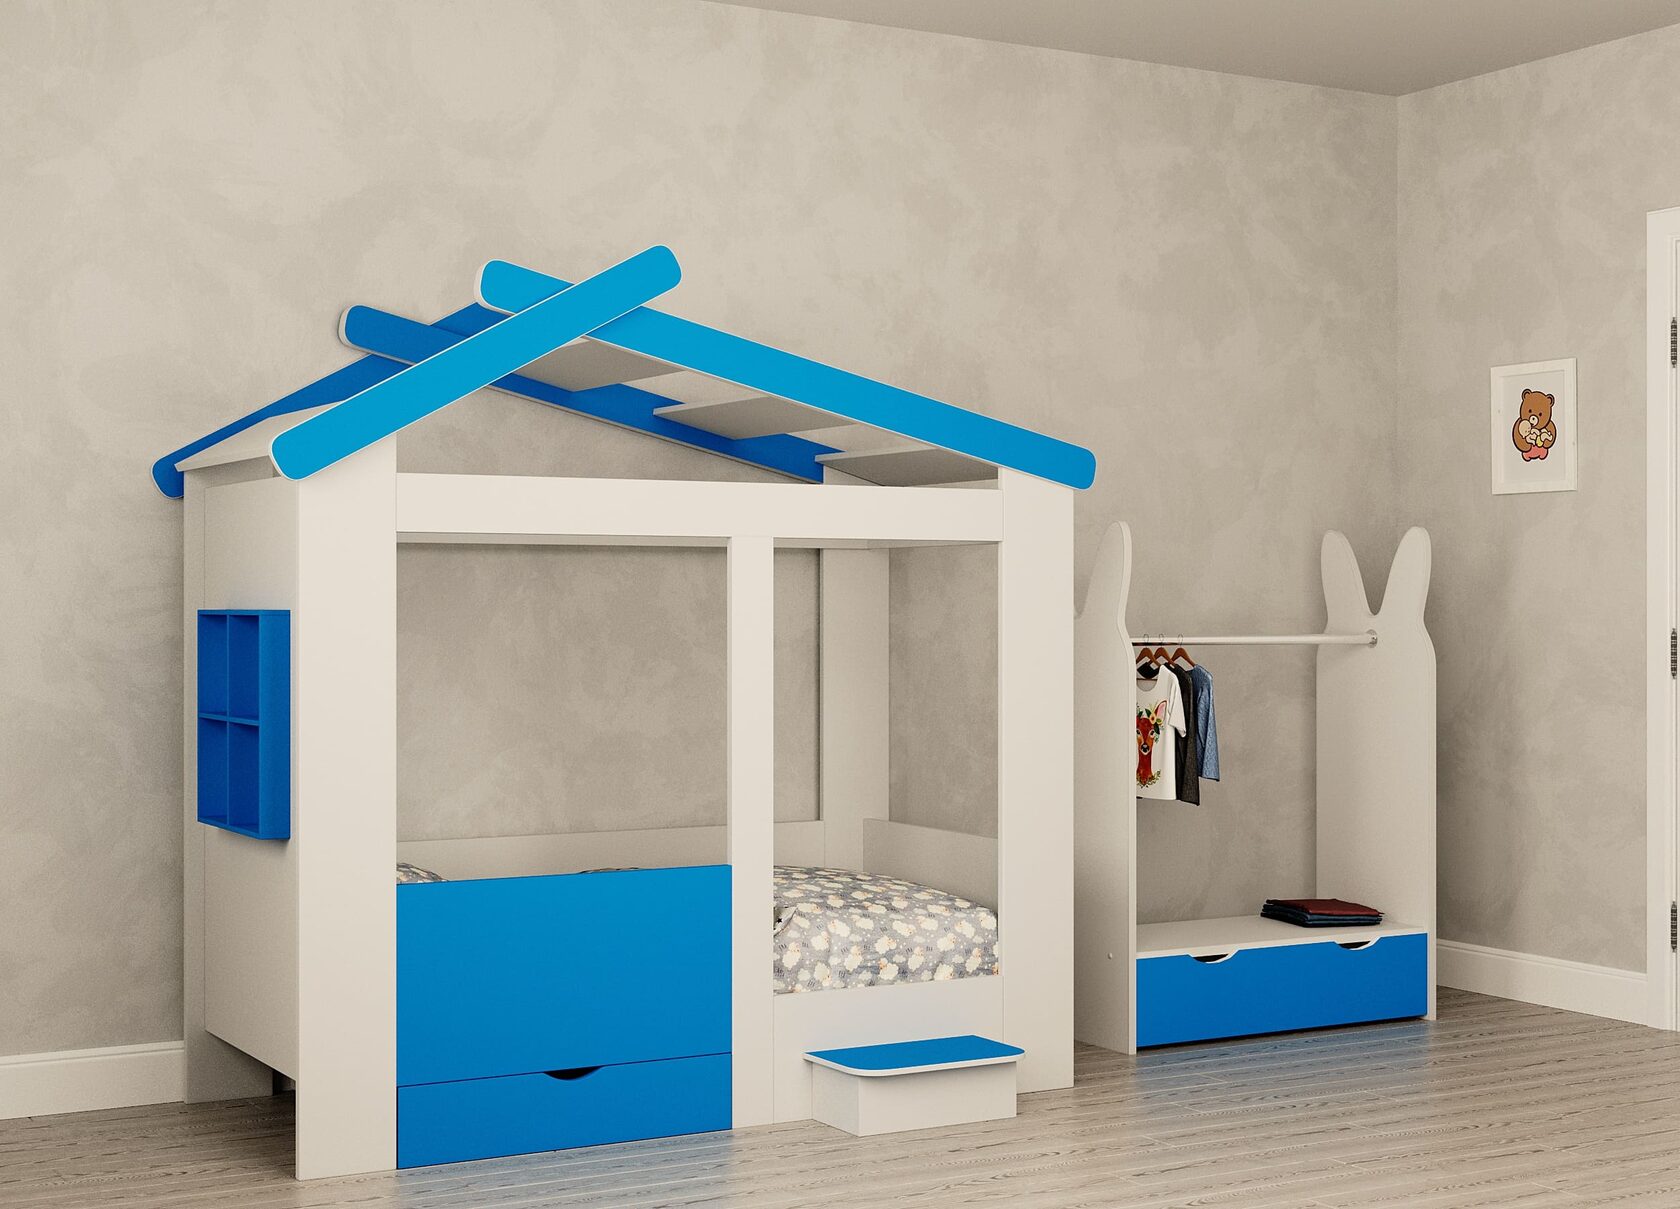 Кровать домик для мальчика